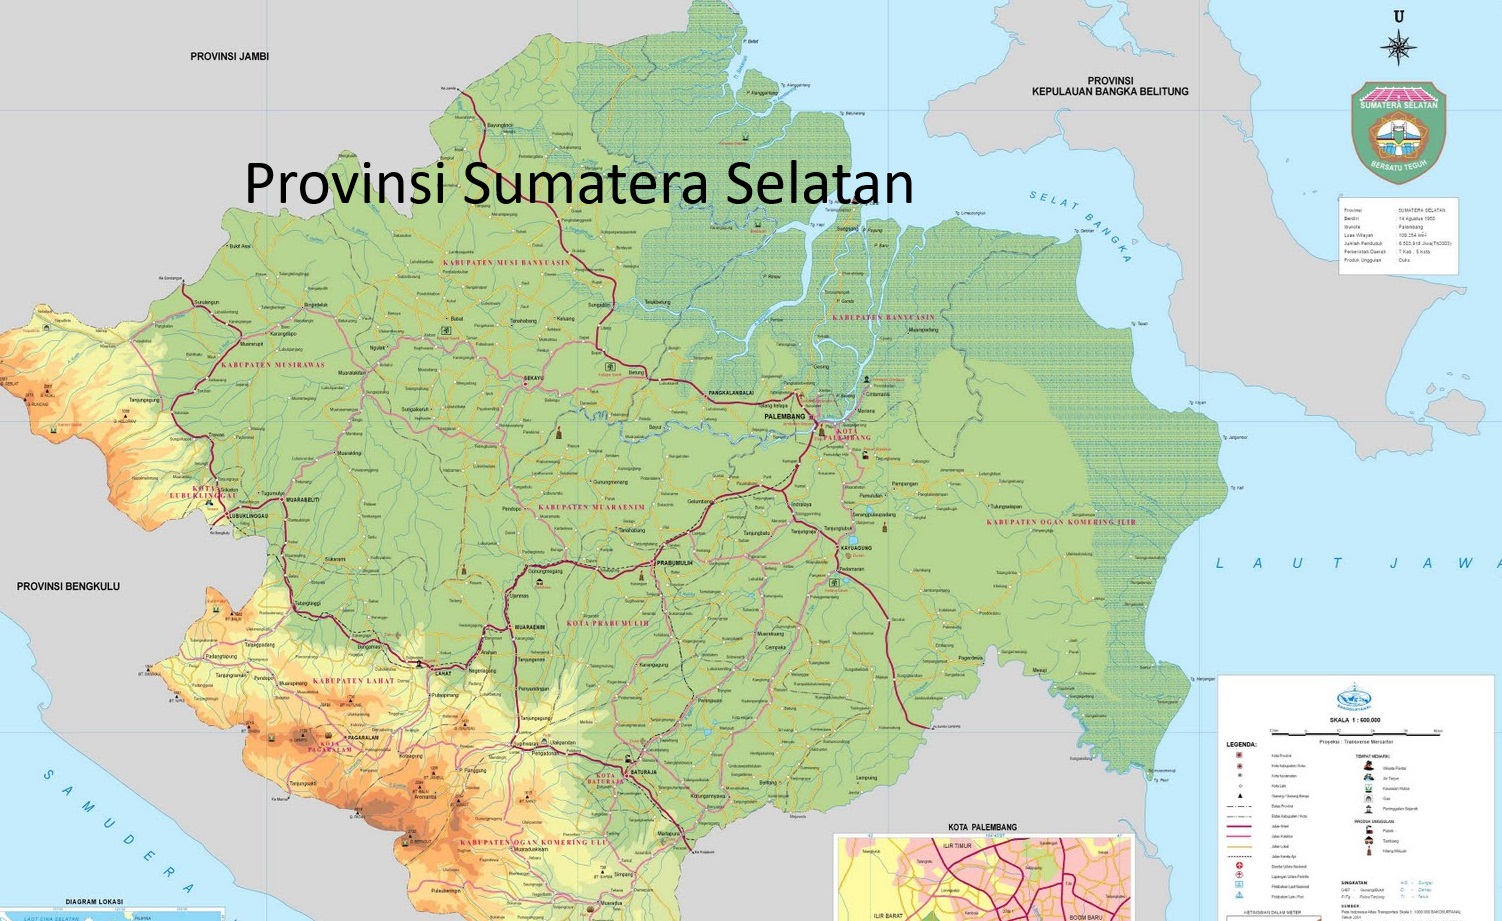 Pemekaran Daerah Otonomi Baru Provinsi Sumatera Selatan: Hambatan dan Harapan Menuju Peningkatan Kesejahteraan